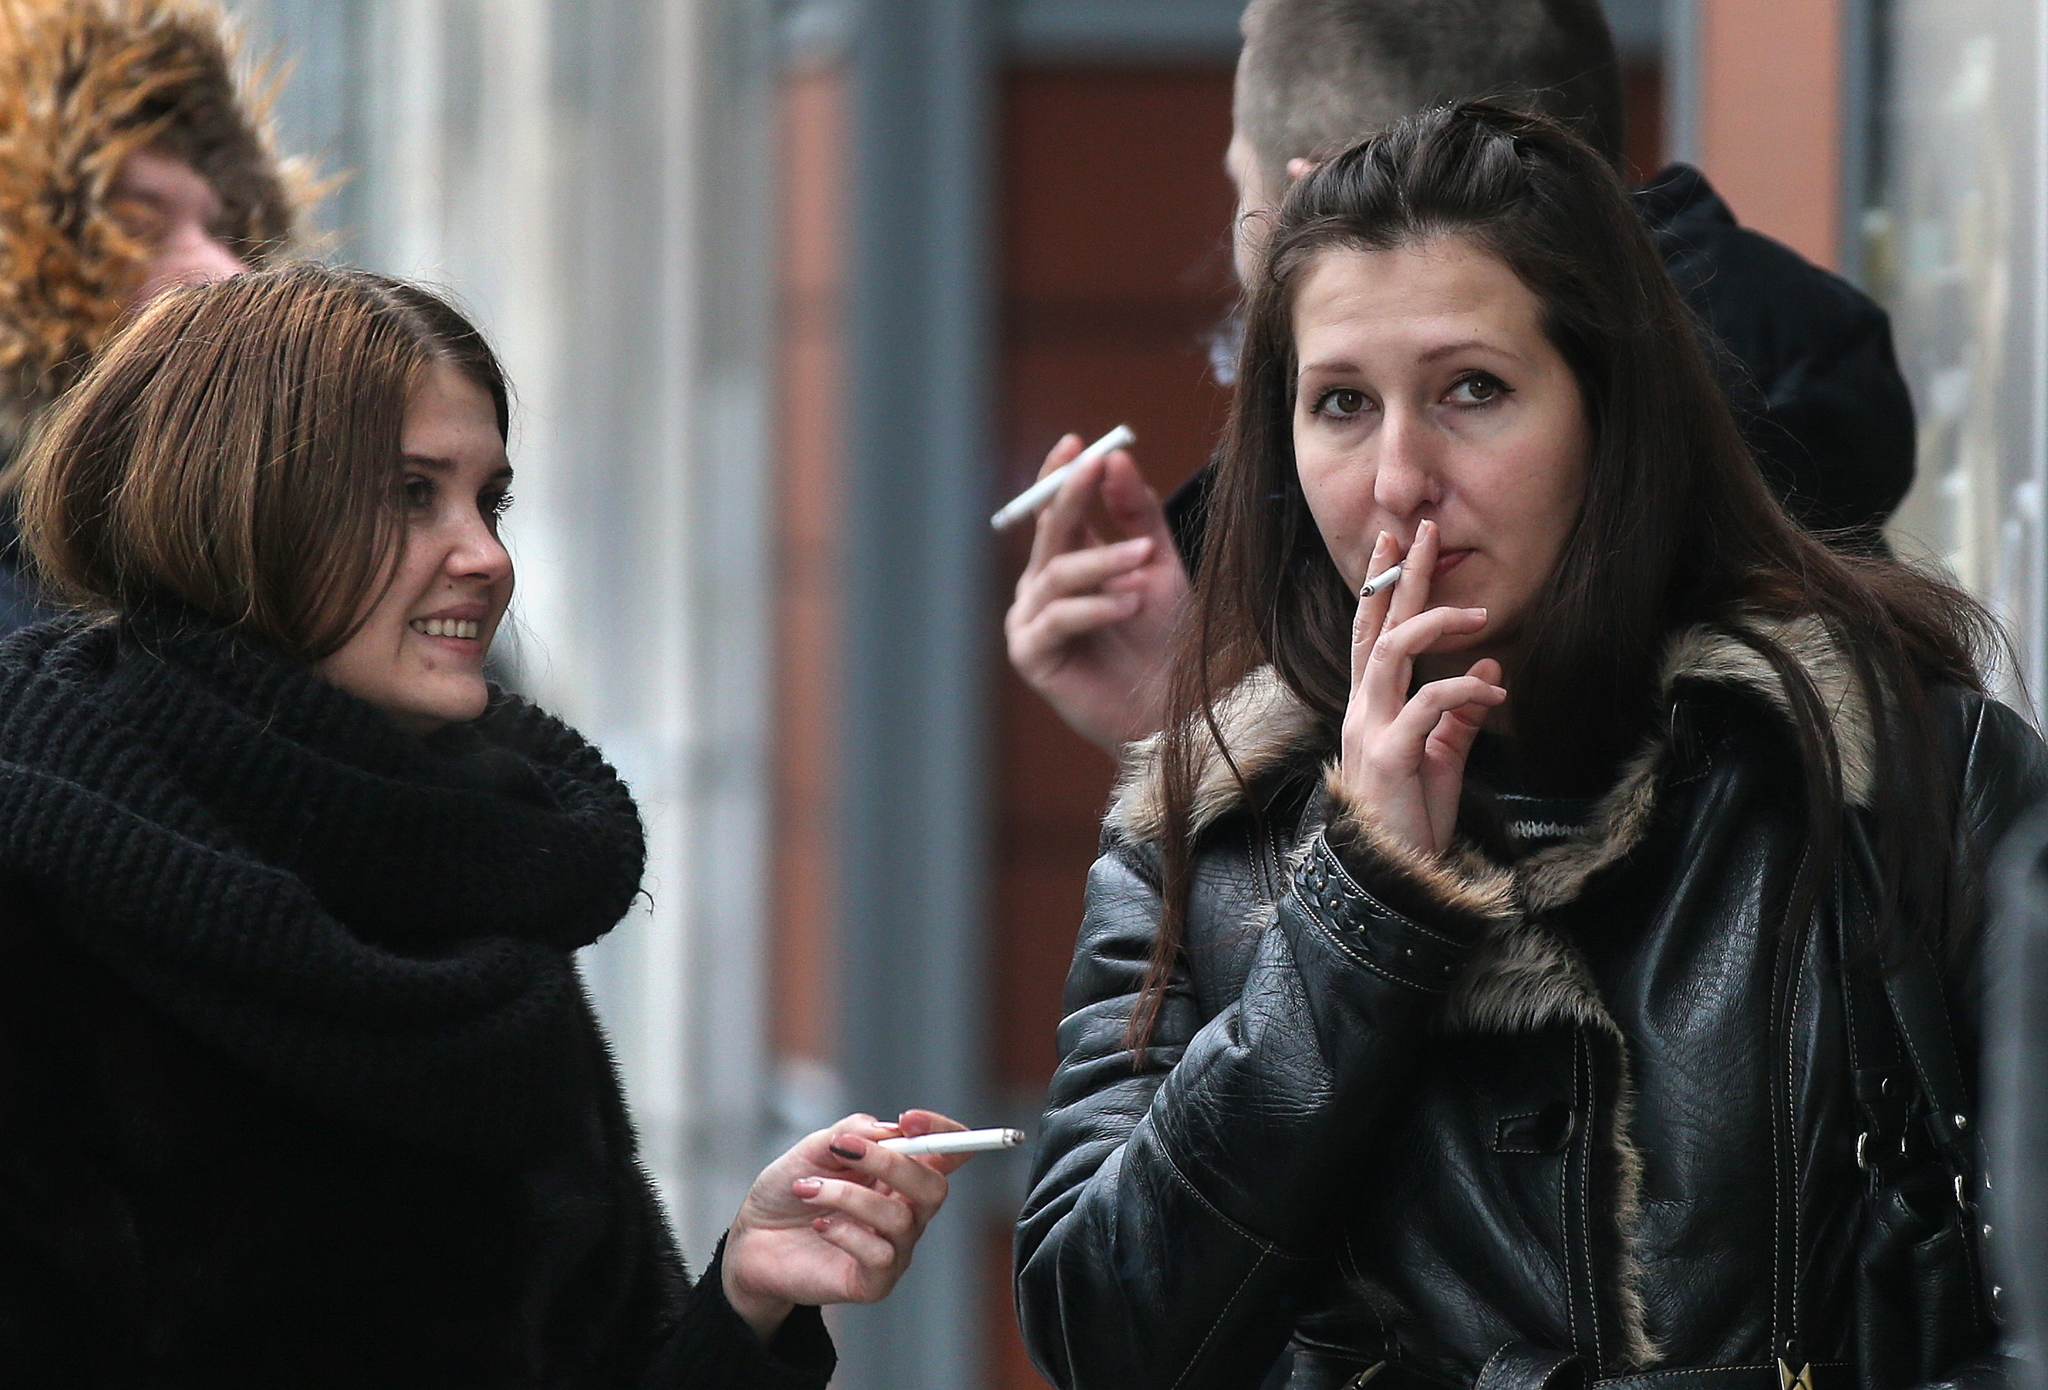 Плакат в поликлинике : Курящая женщина кончает раком. Так ли? — Обсуждай